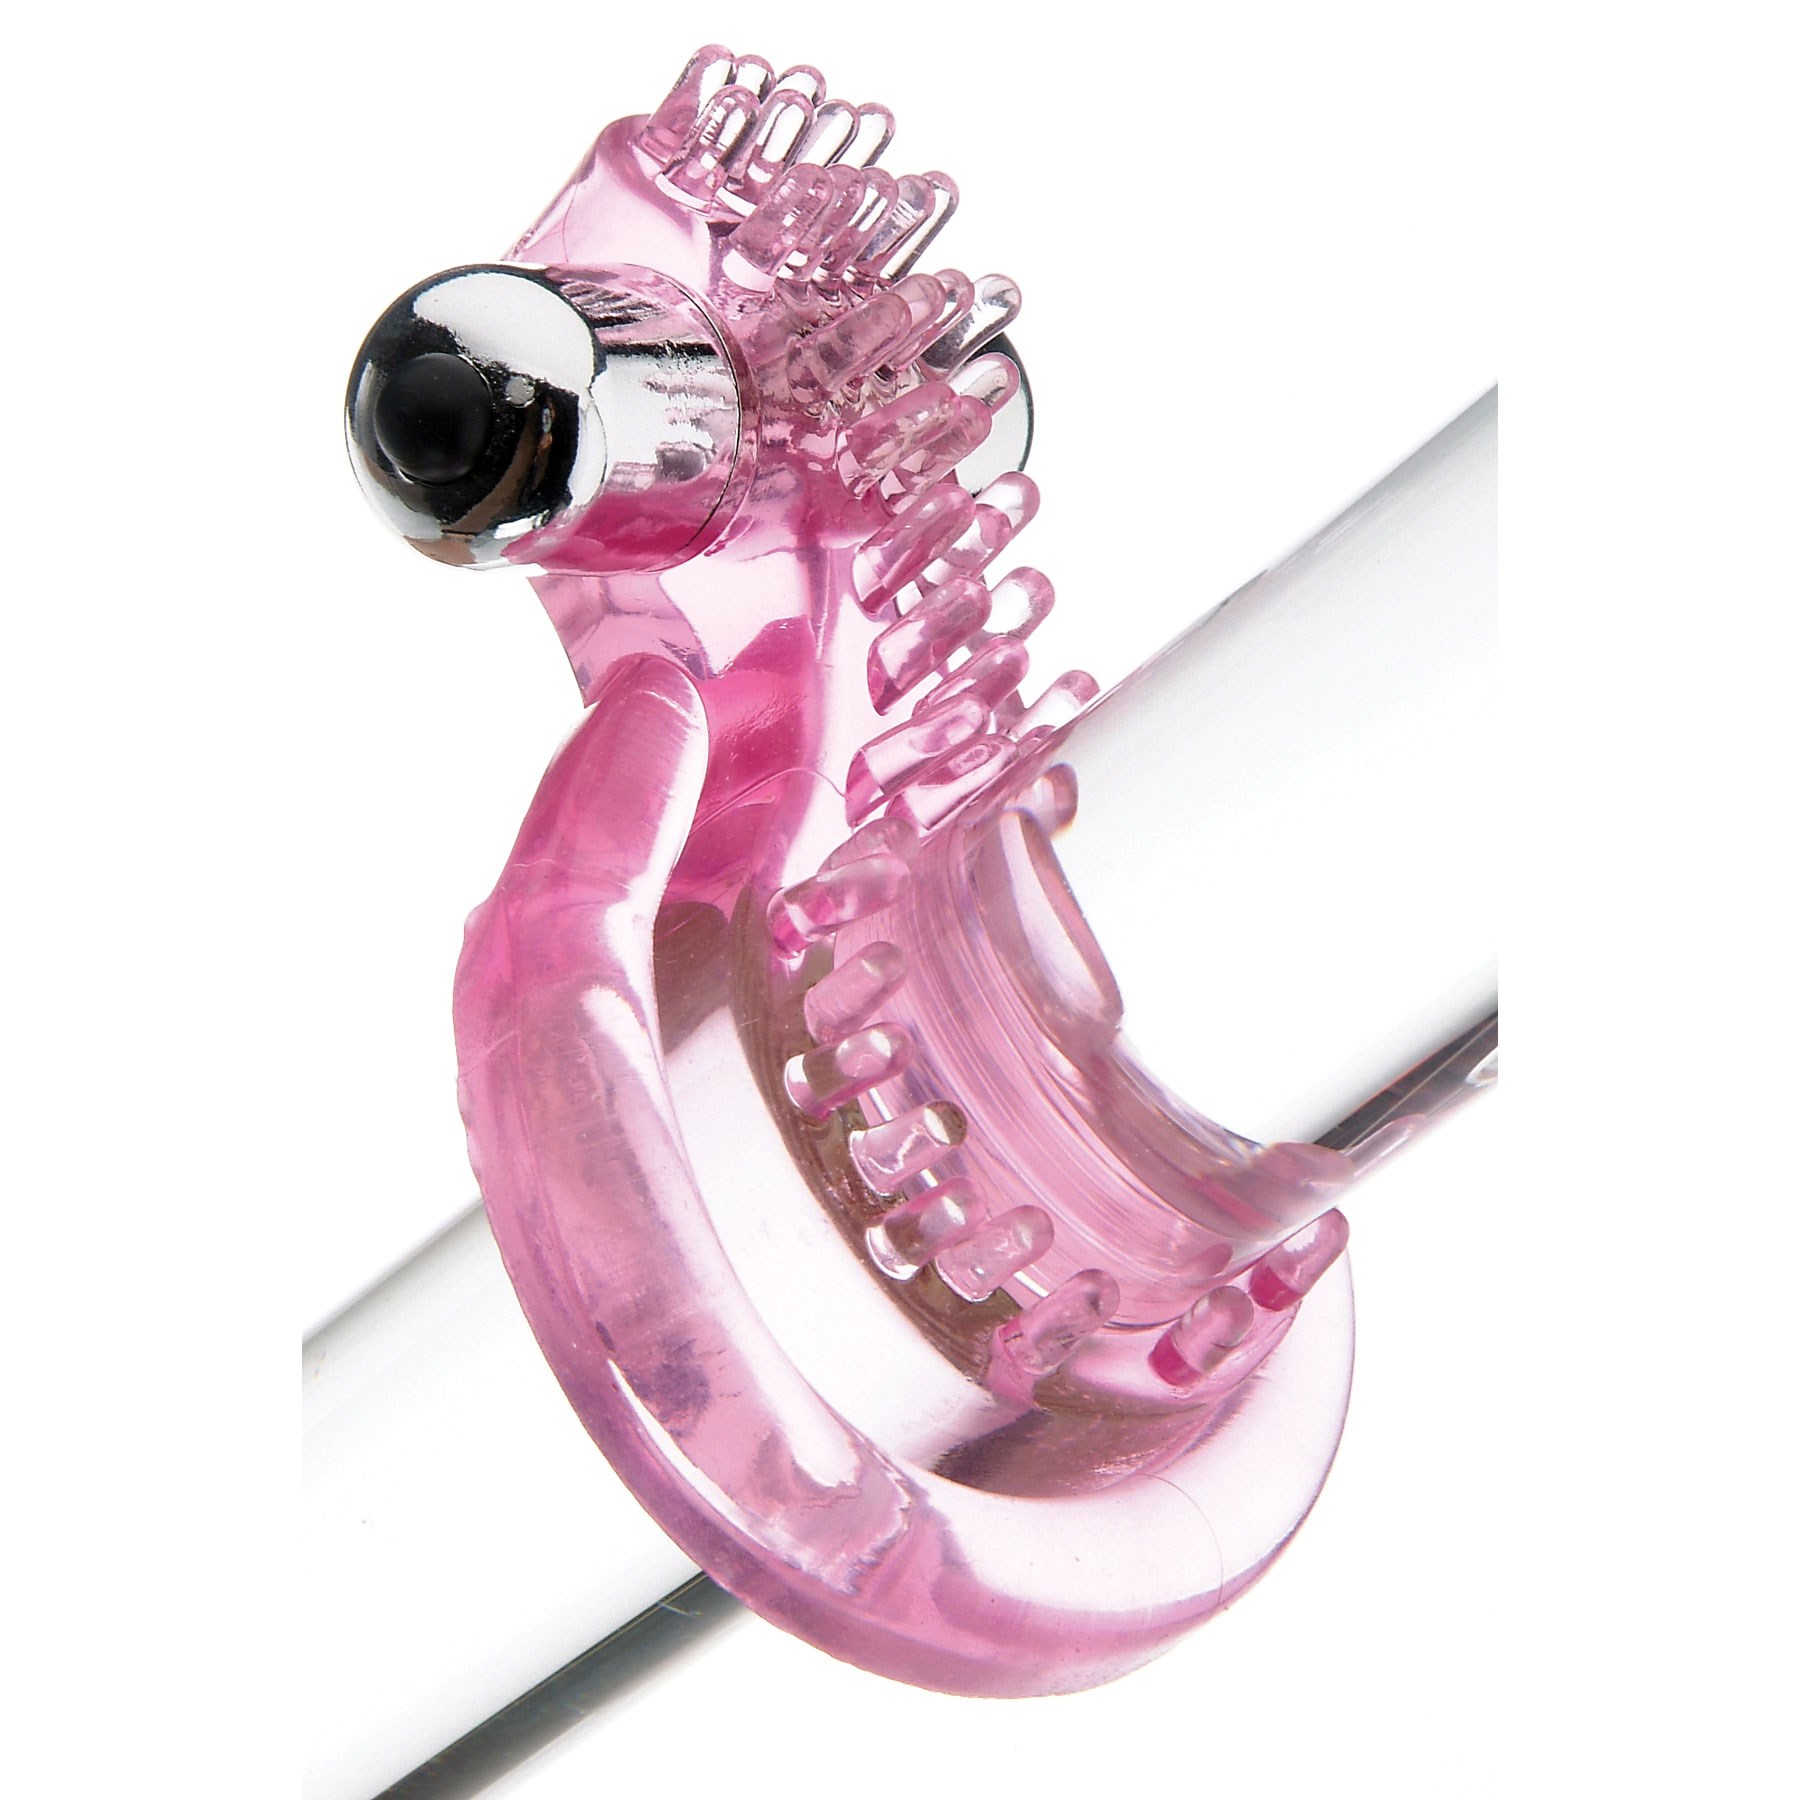 A&E Intimates Personal Pleasurizer Vibrator shown on glass rod